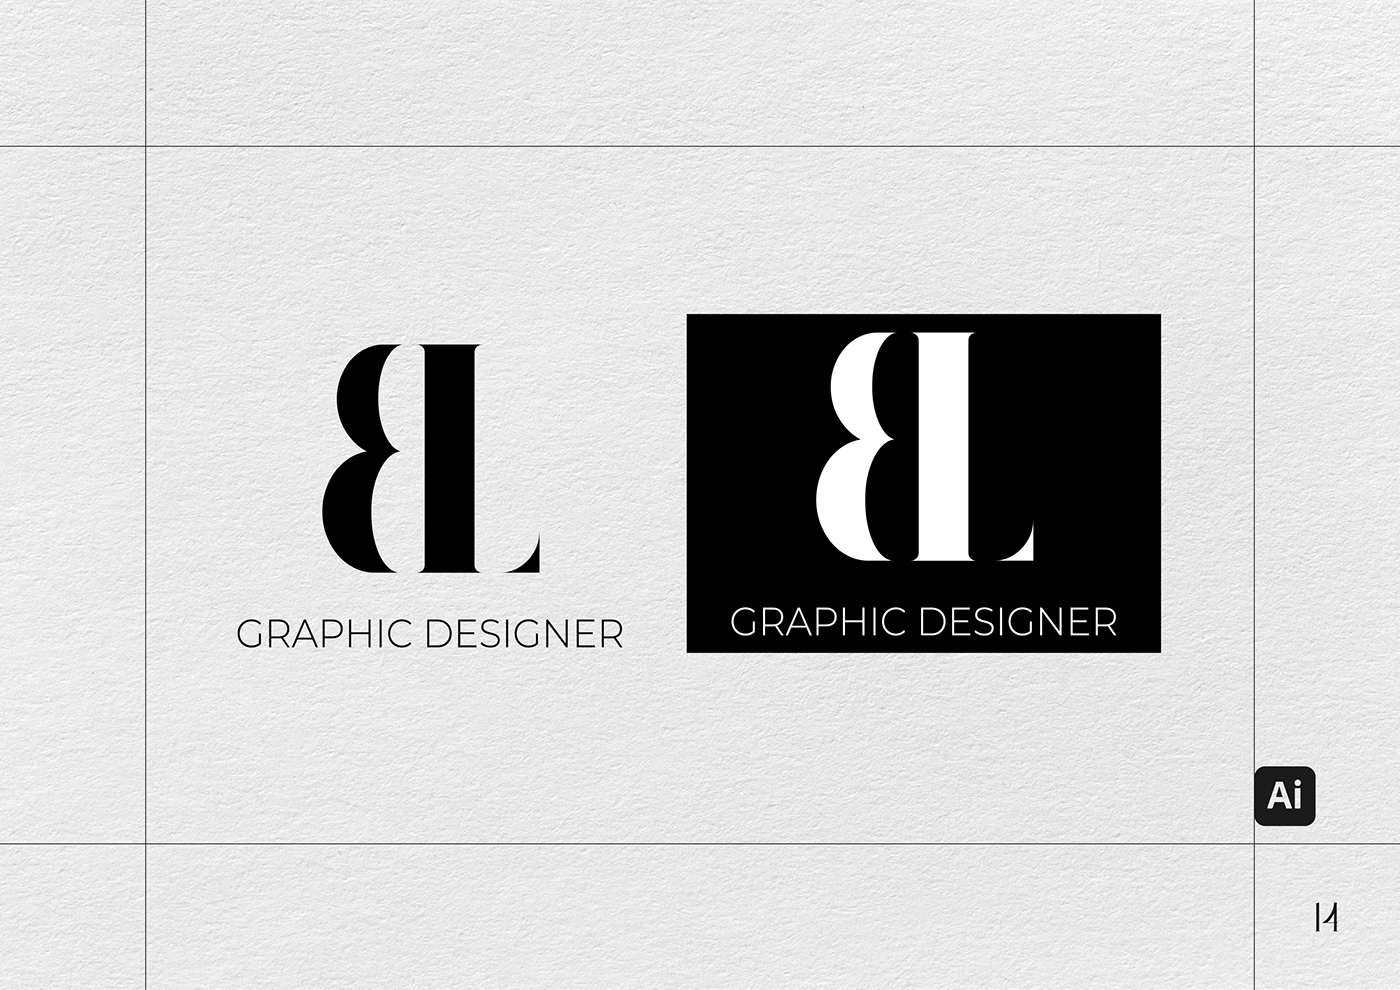 Porfolio Portfolio Design graphic design  Graphic Designer brand identity design adobe illustrator Social media post